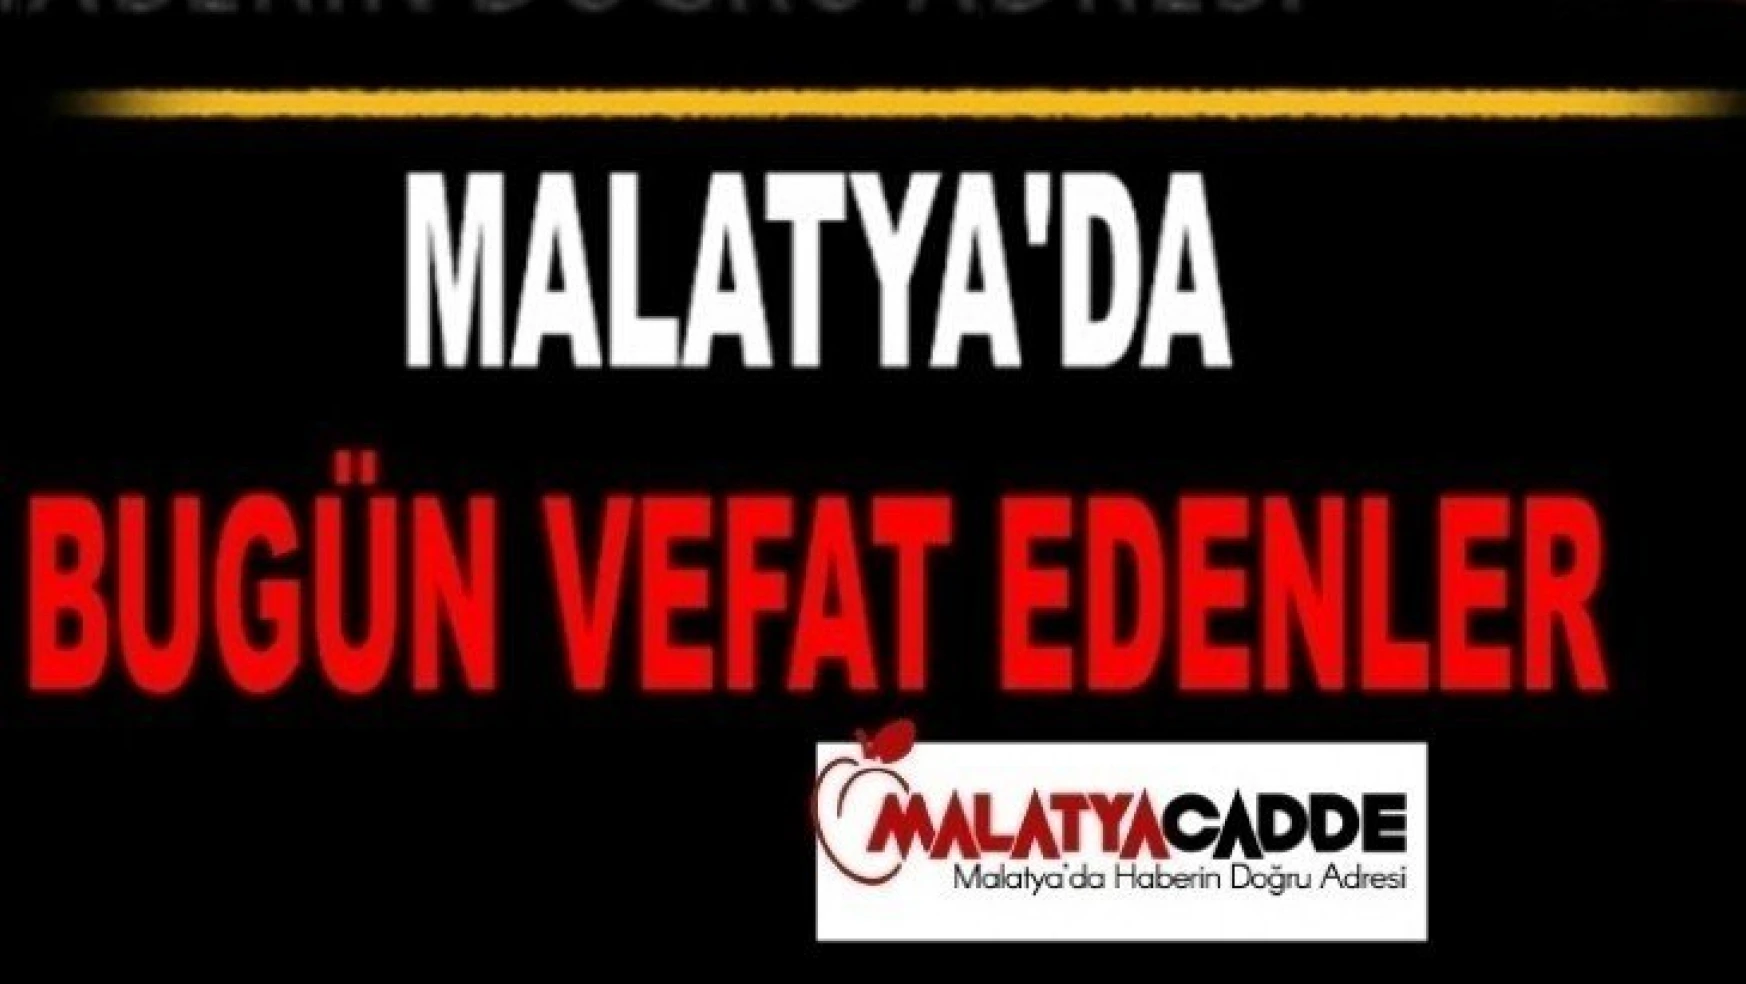 Malatya'da Bugün 13 Kişi Vefat Etti